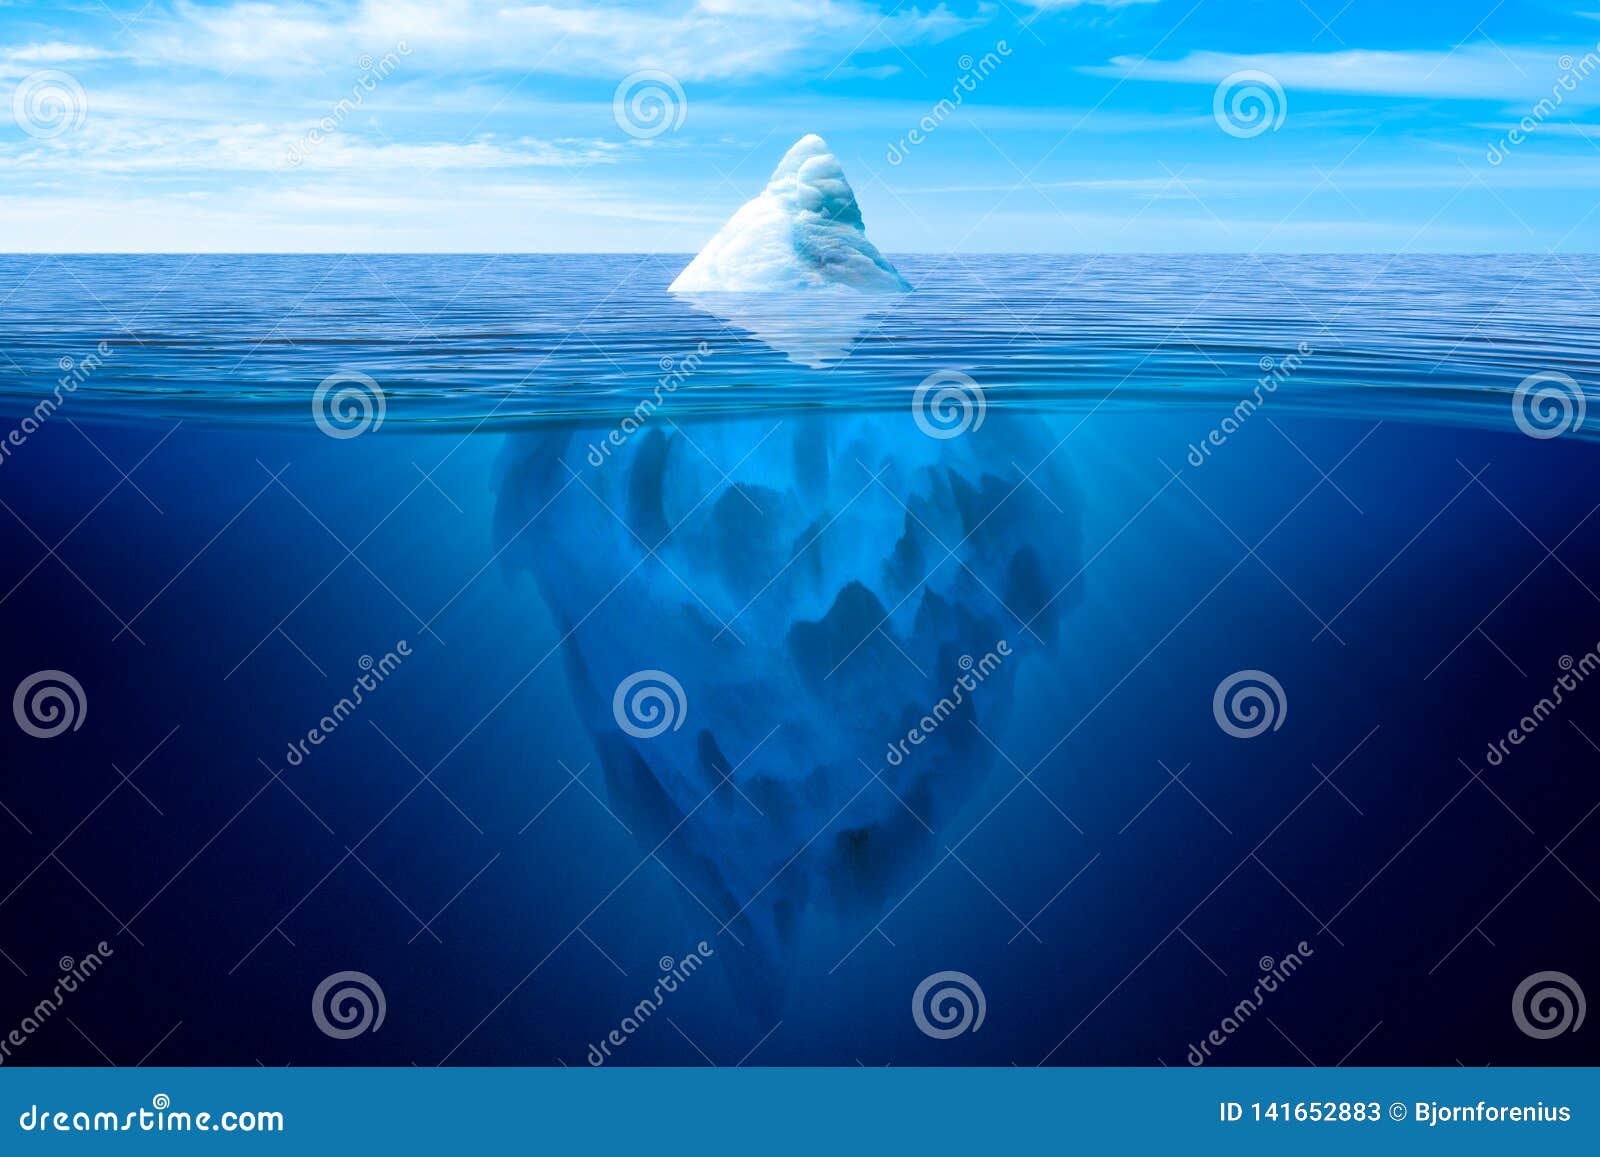 tip of the iceberg.